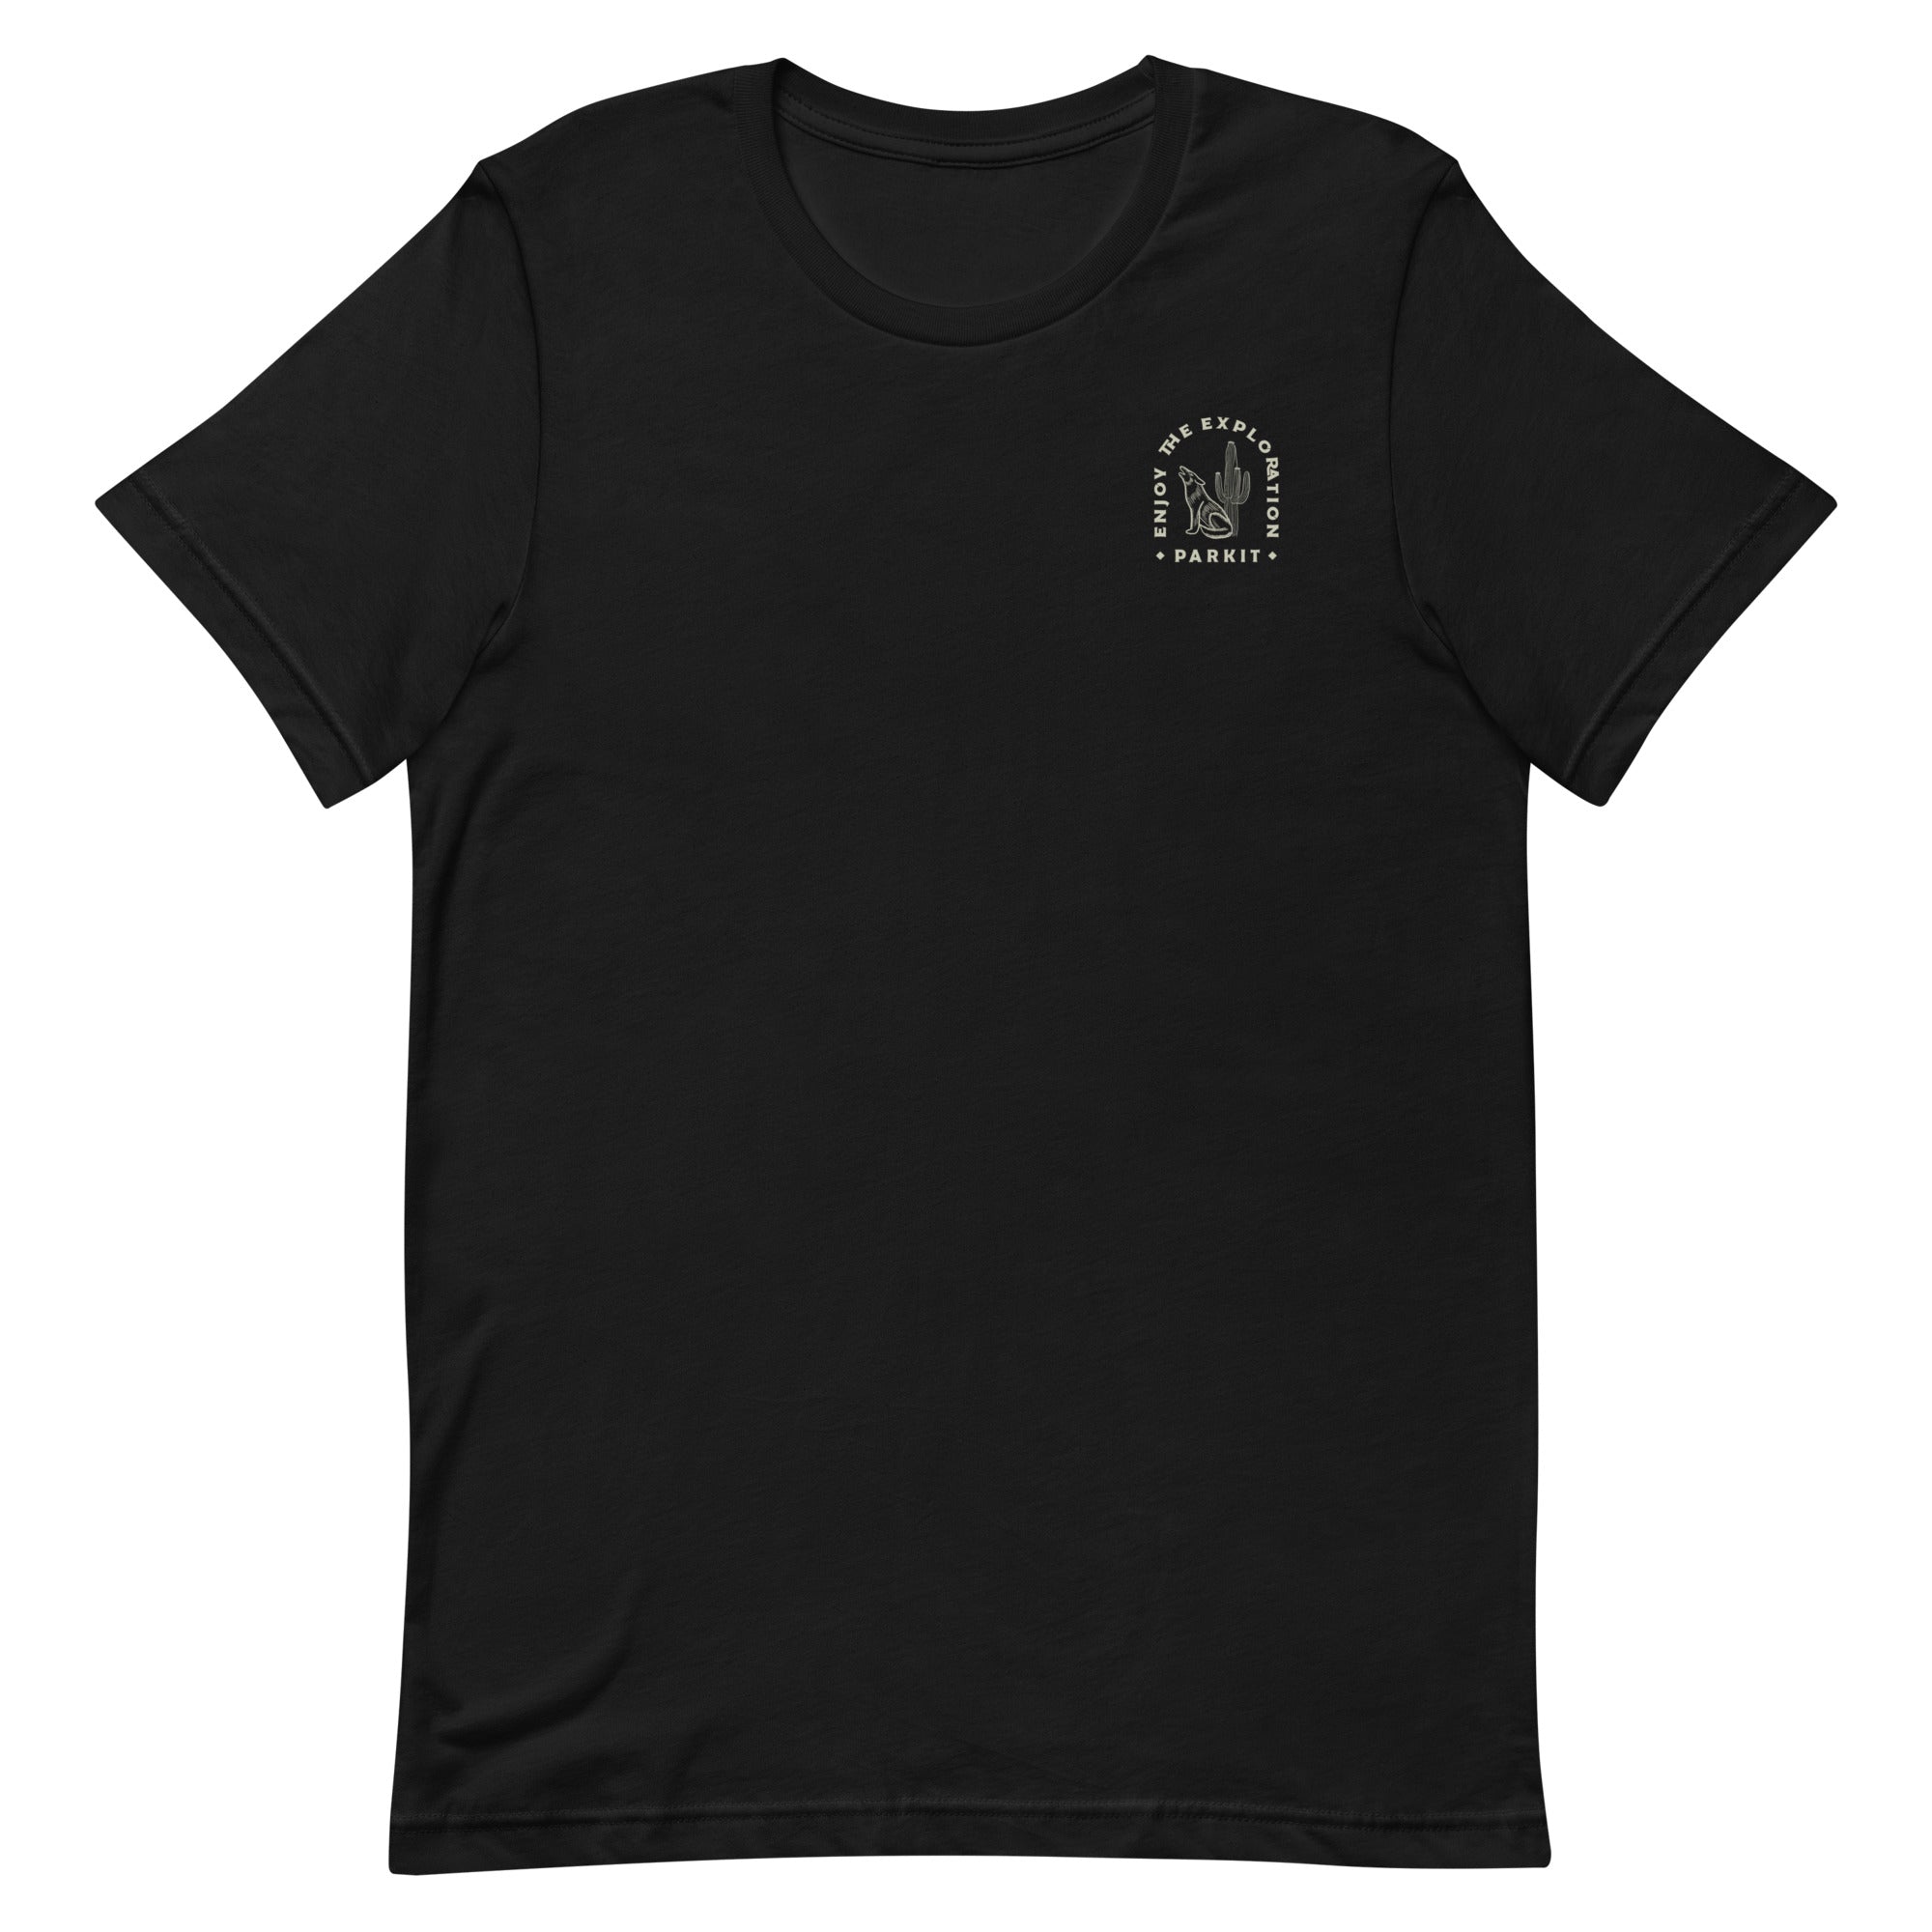 unisex-staple-t-shirt-black-front-643c60883bba0.jpg